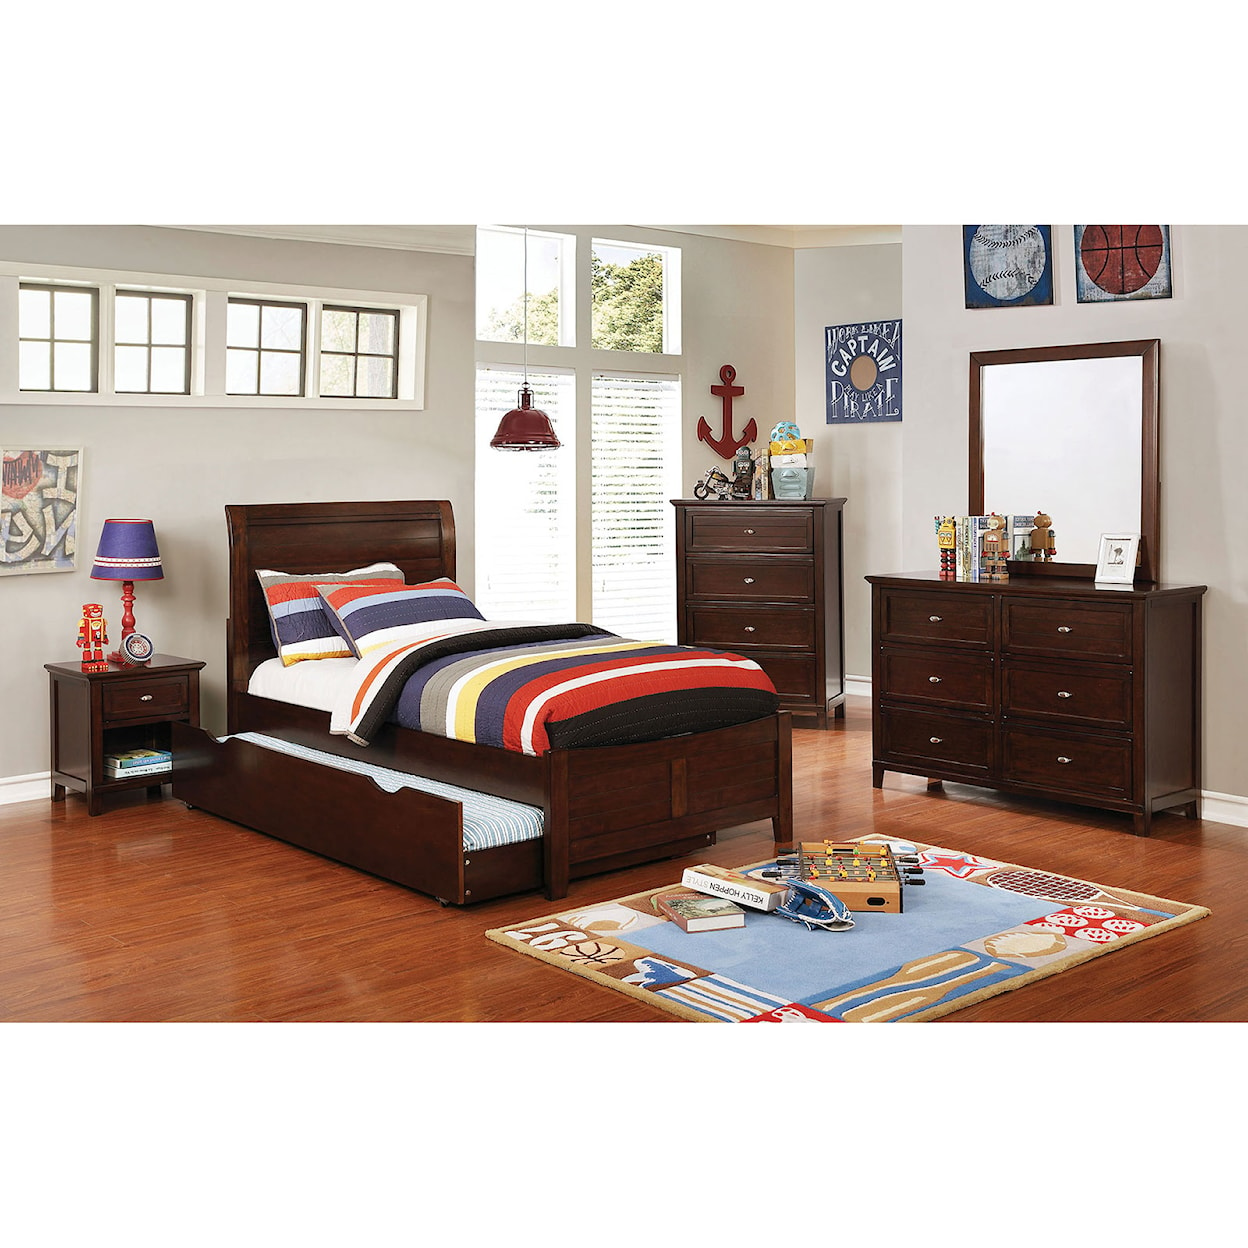 Furniture of America Brogan 4 Pc. Full Bedroom Set